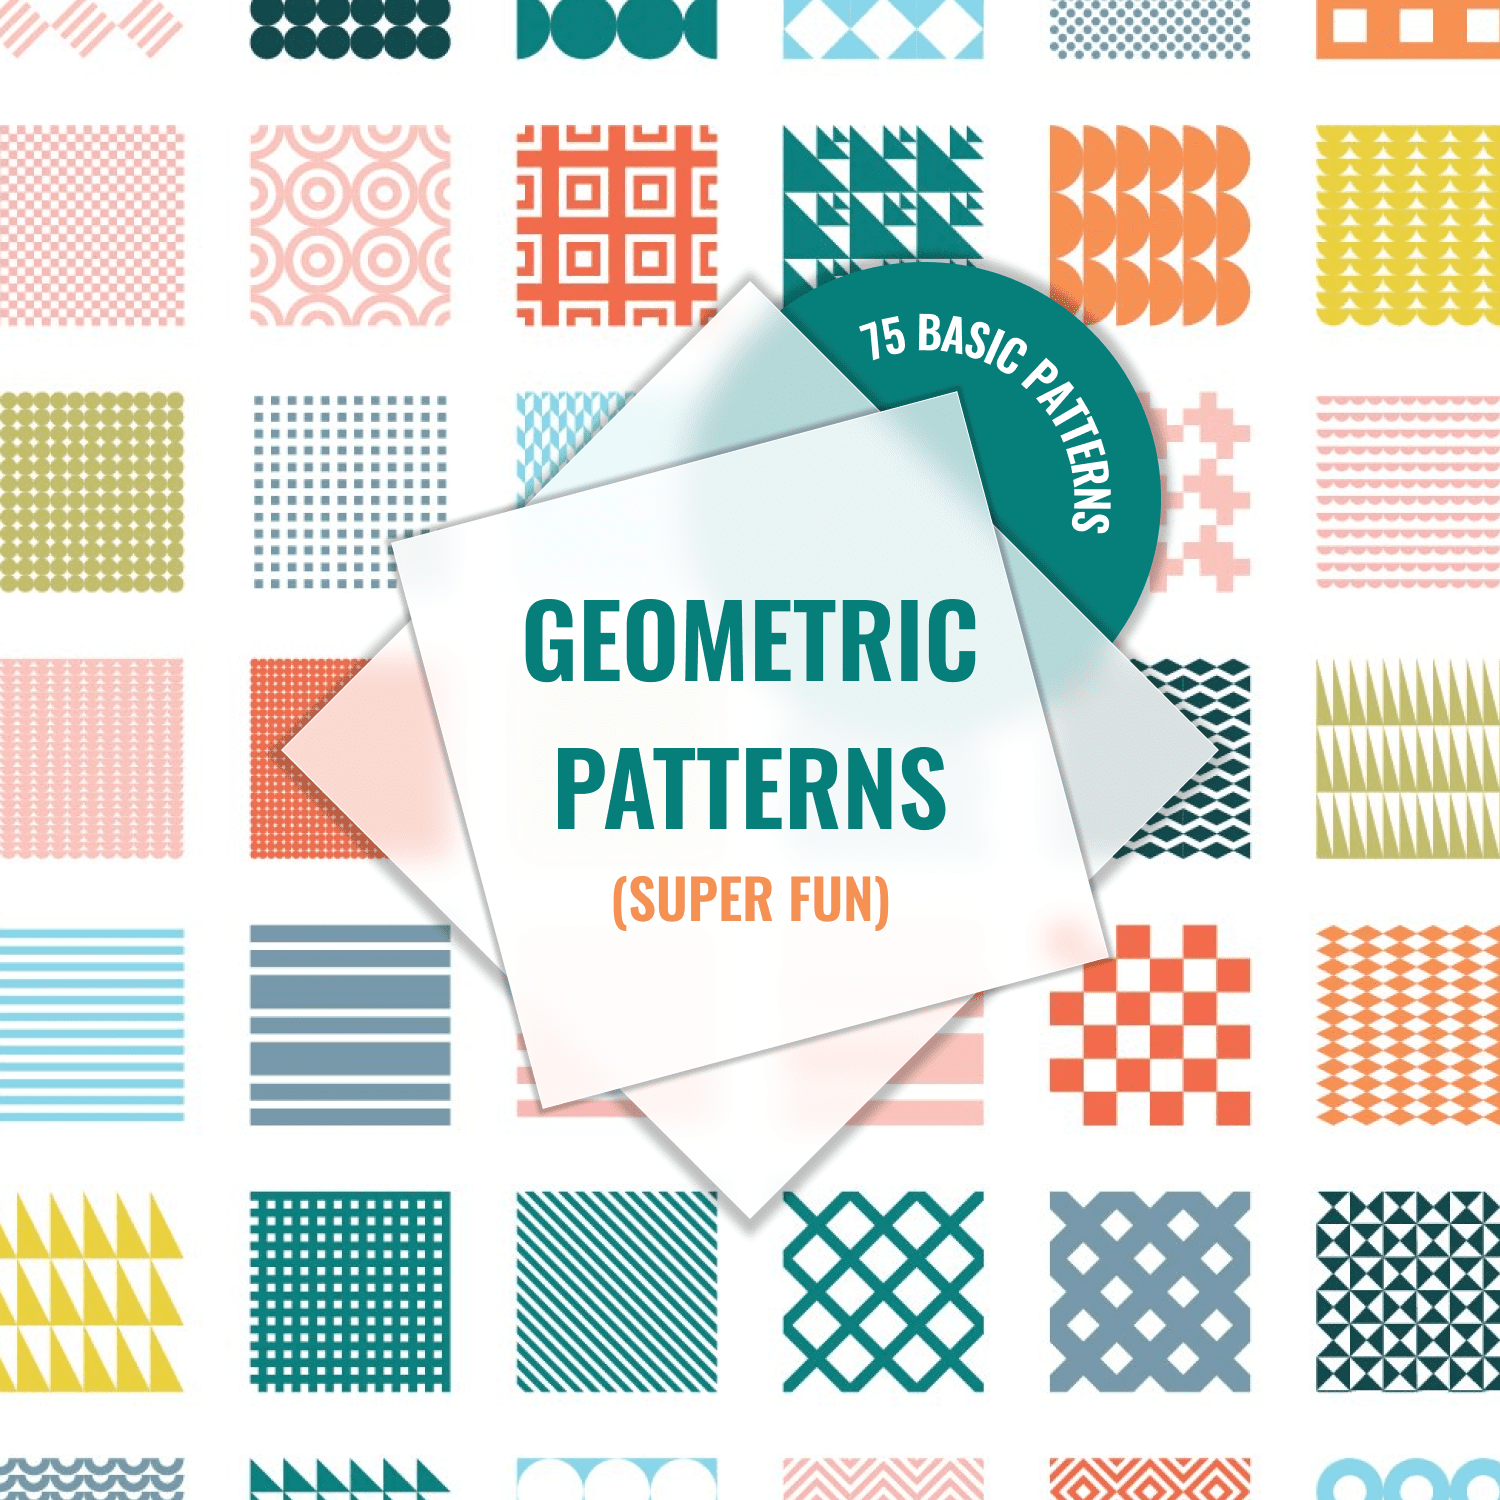 (Super Fun) Geometric Patterns.